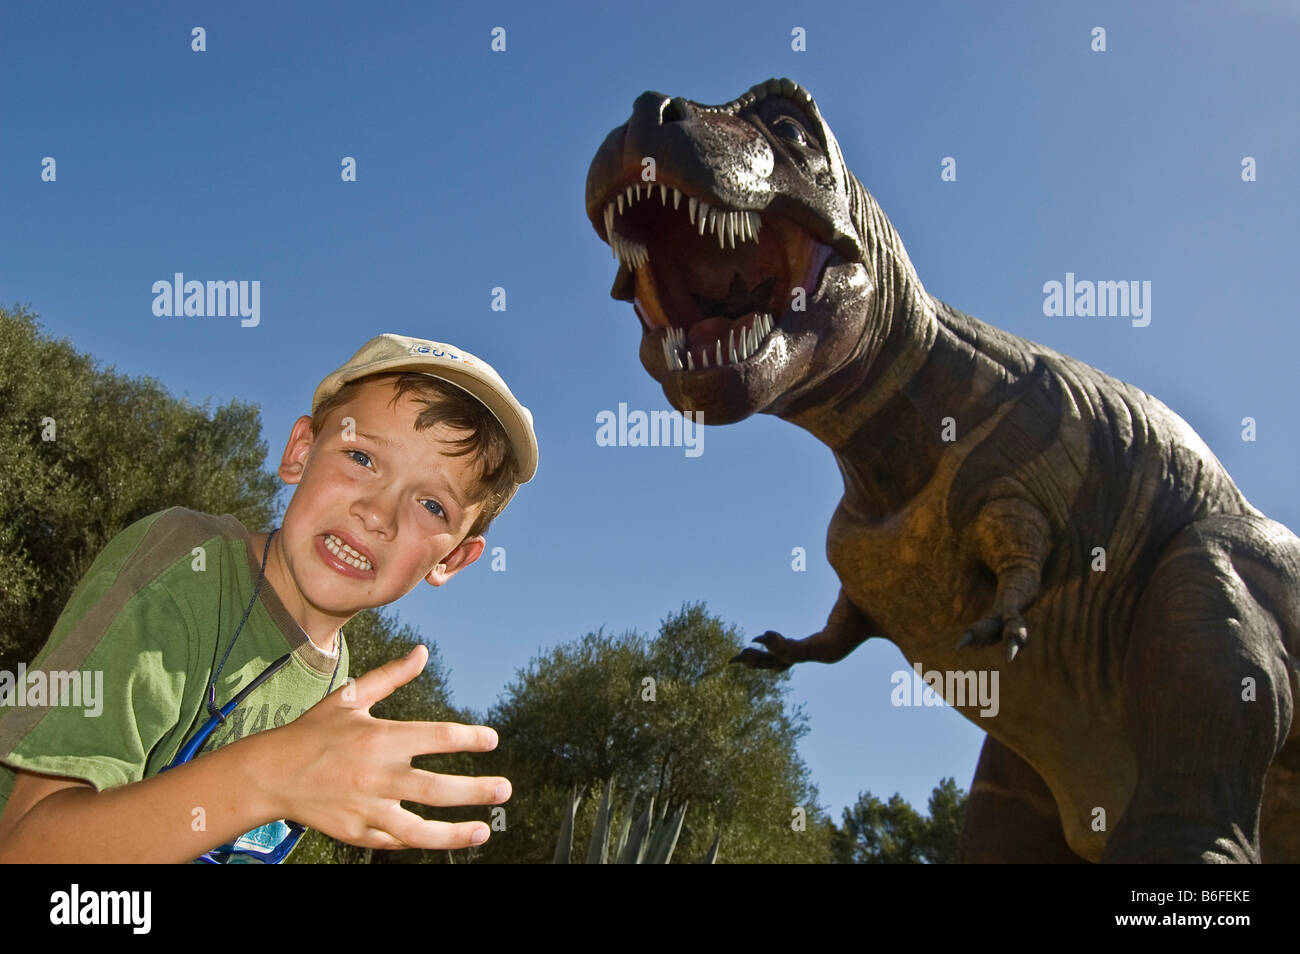 Ragazzo con un manichino di un dinosauro (Tyrannosaurus Rex), Maiorca, isole Baleari, Spagna, Europa Foto Stock